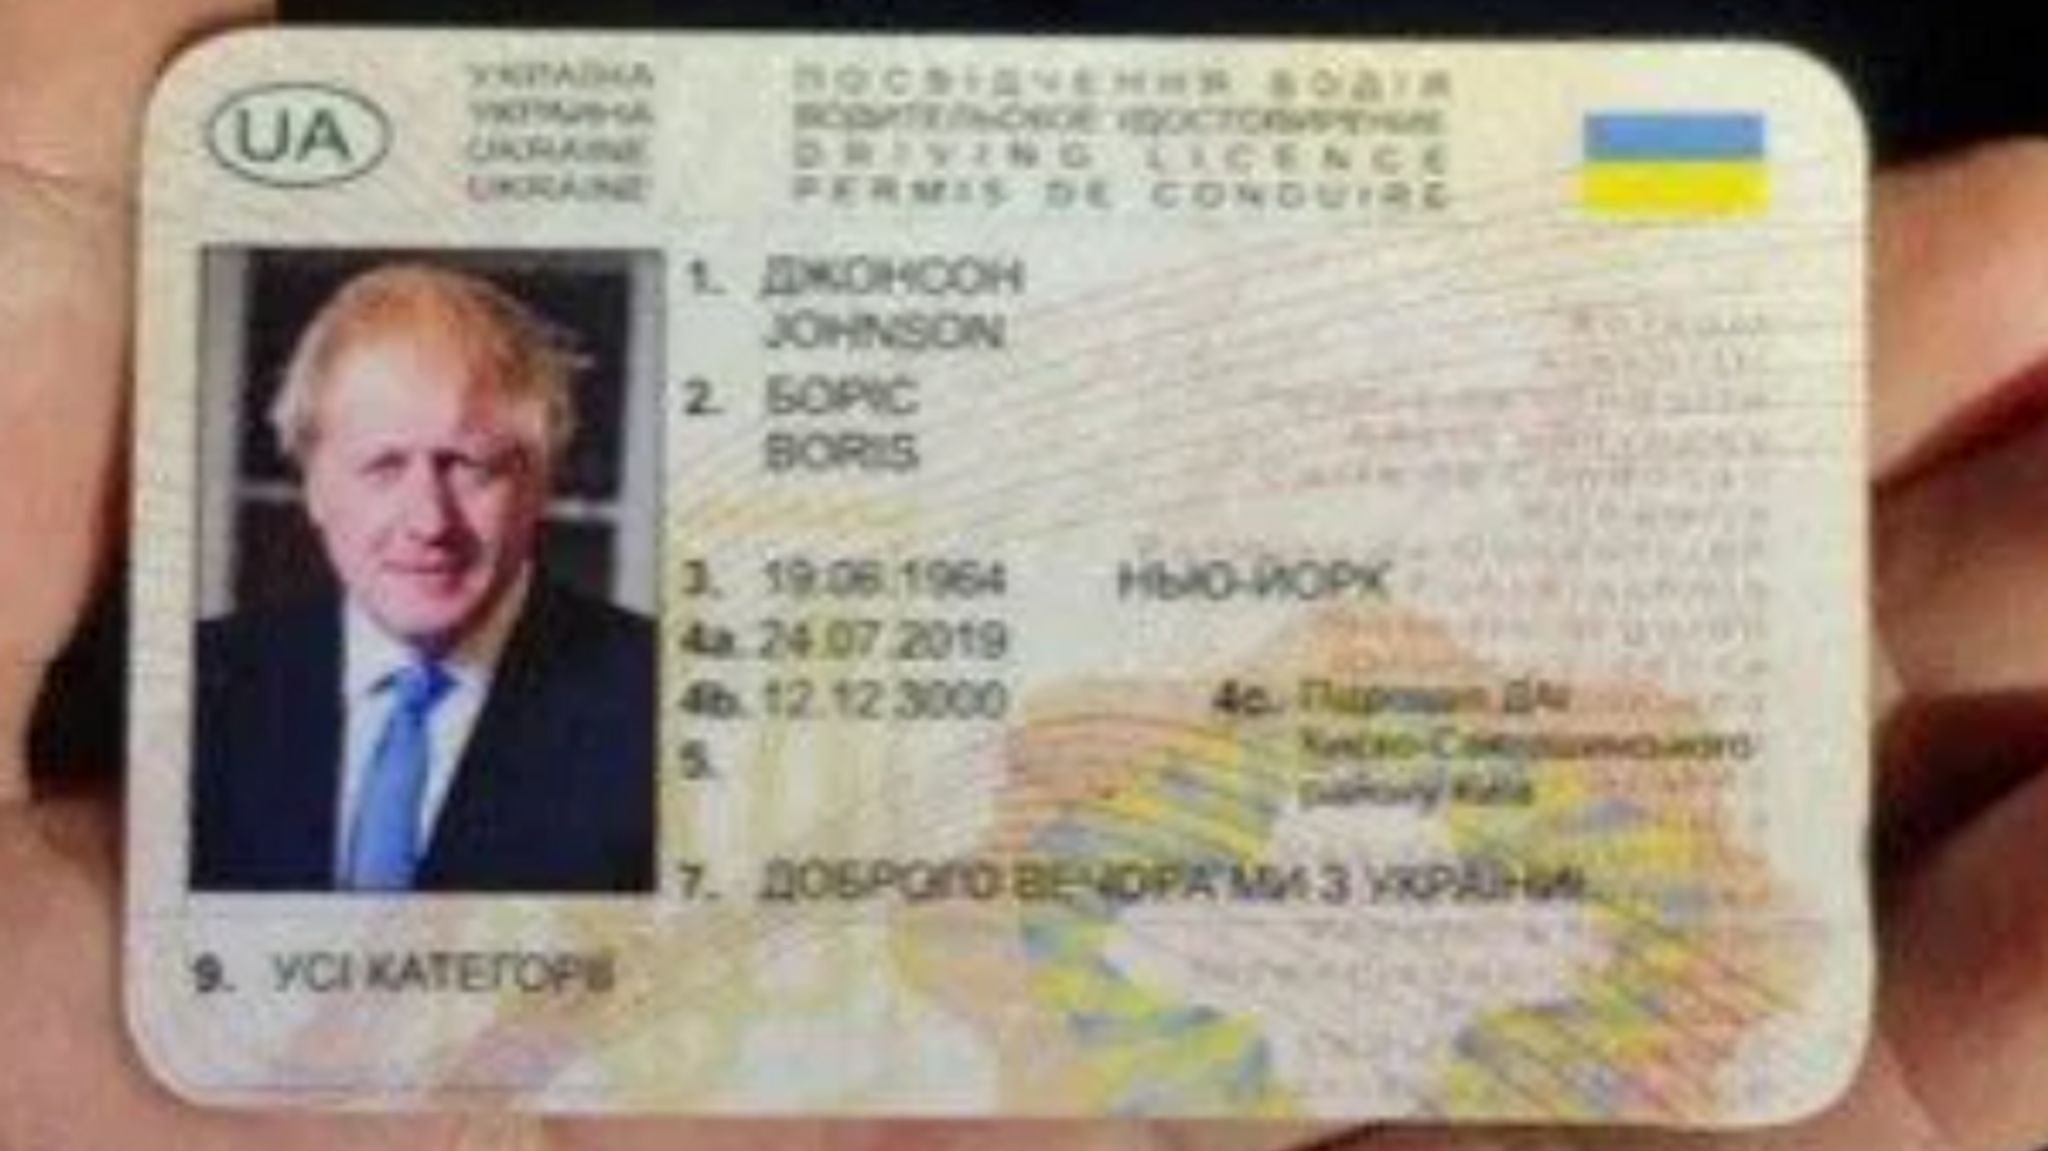 Carta de condução falsa com os dados de Boris Johnson